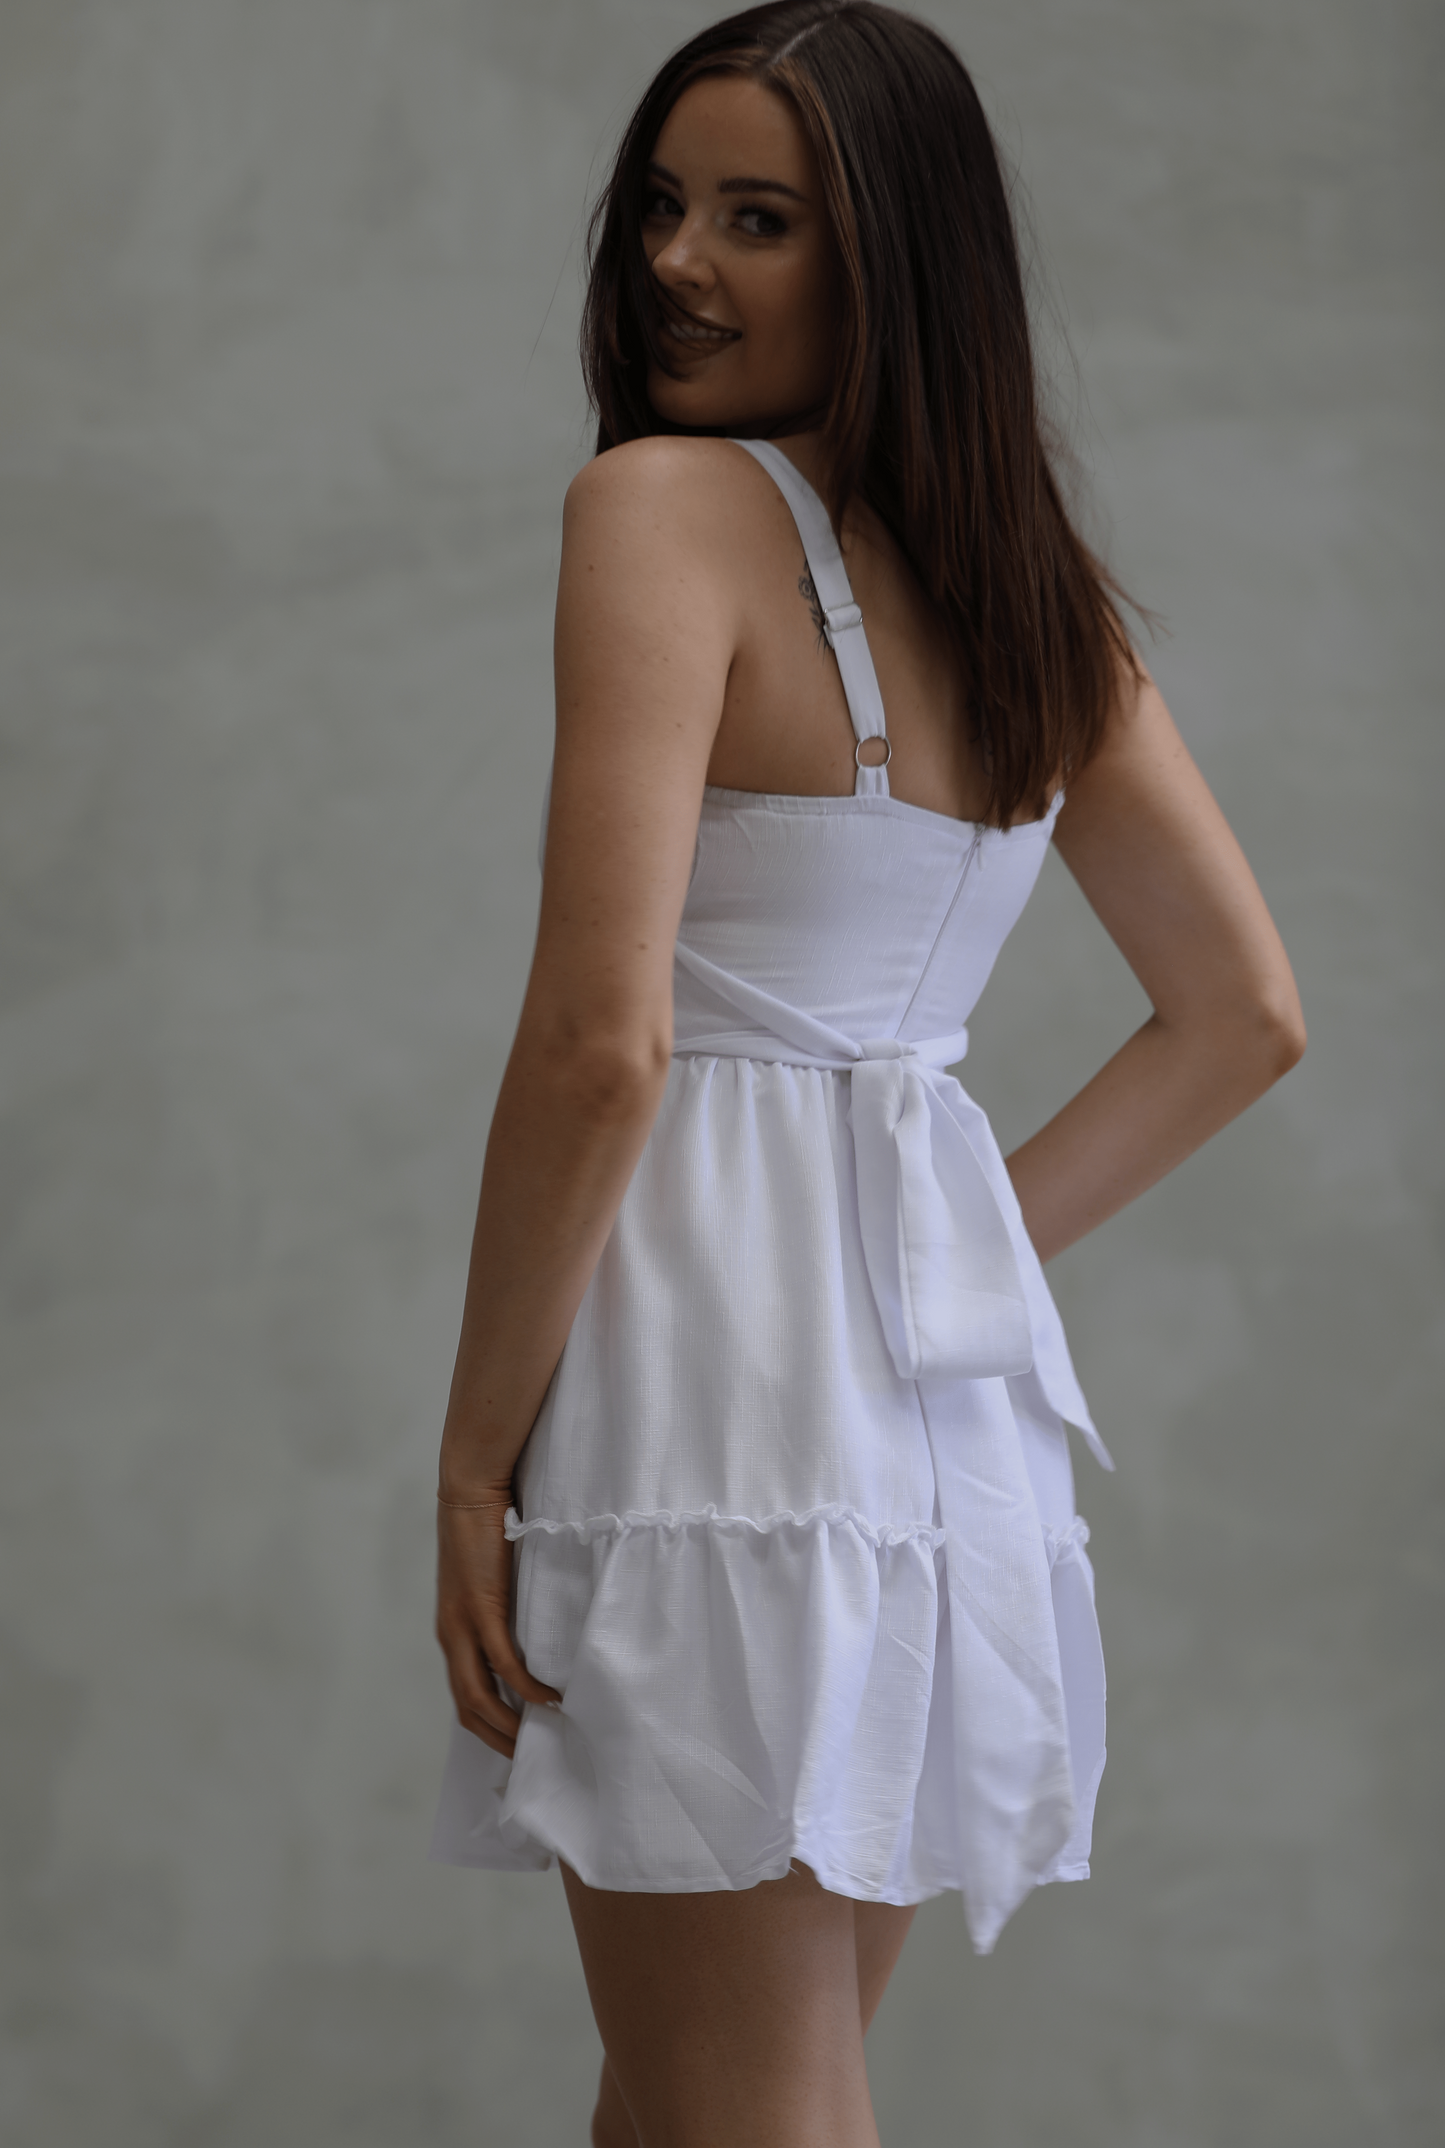 BECKY DRESS - SOFT LINEN LIKE DRESS IN WHITE